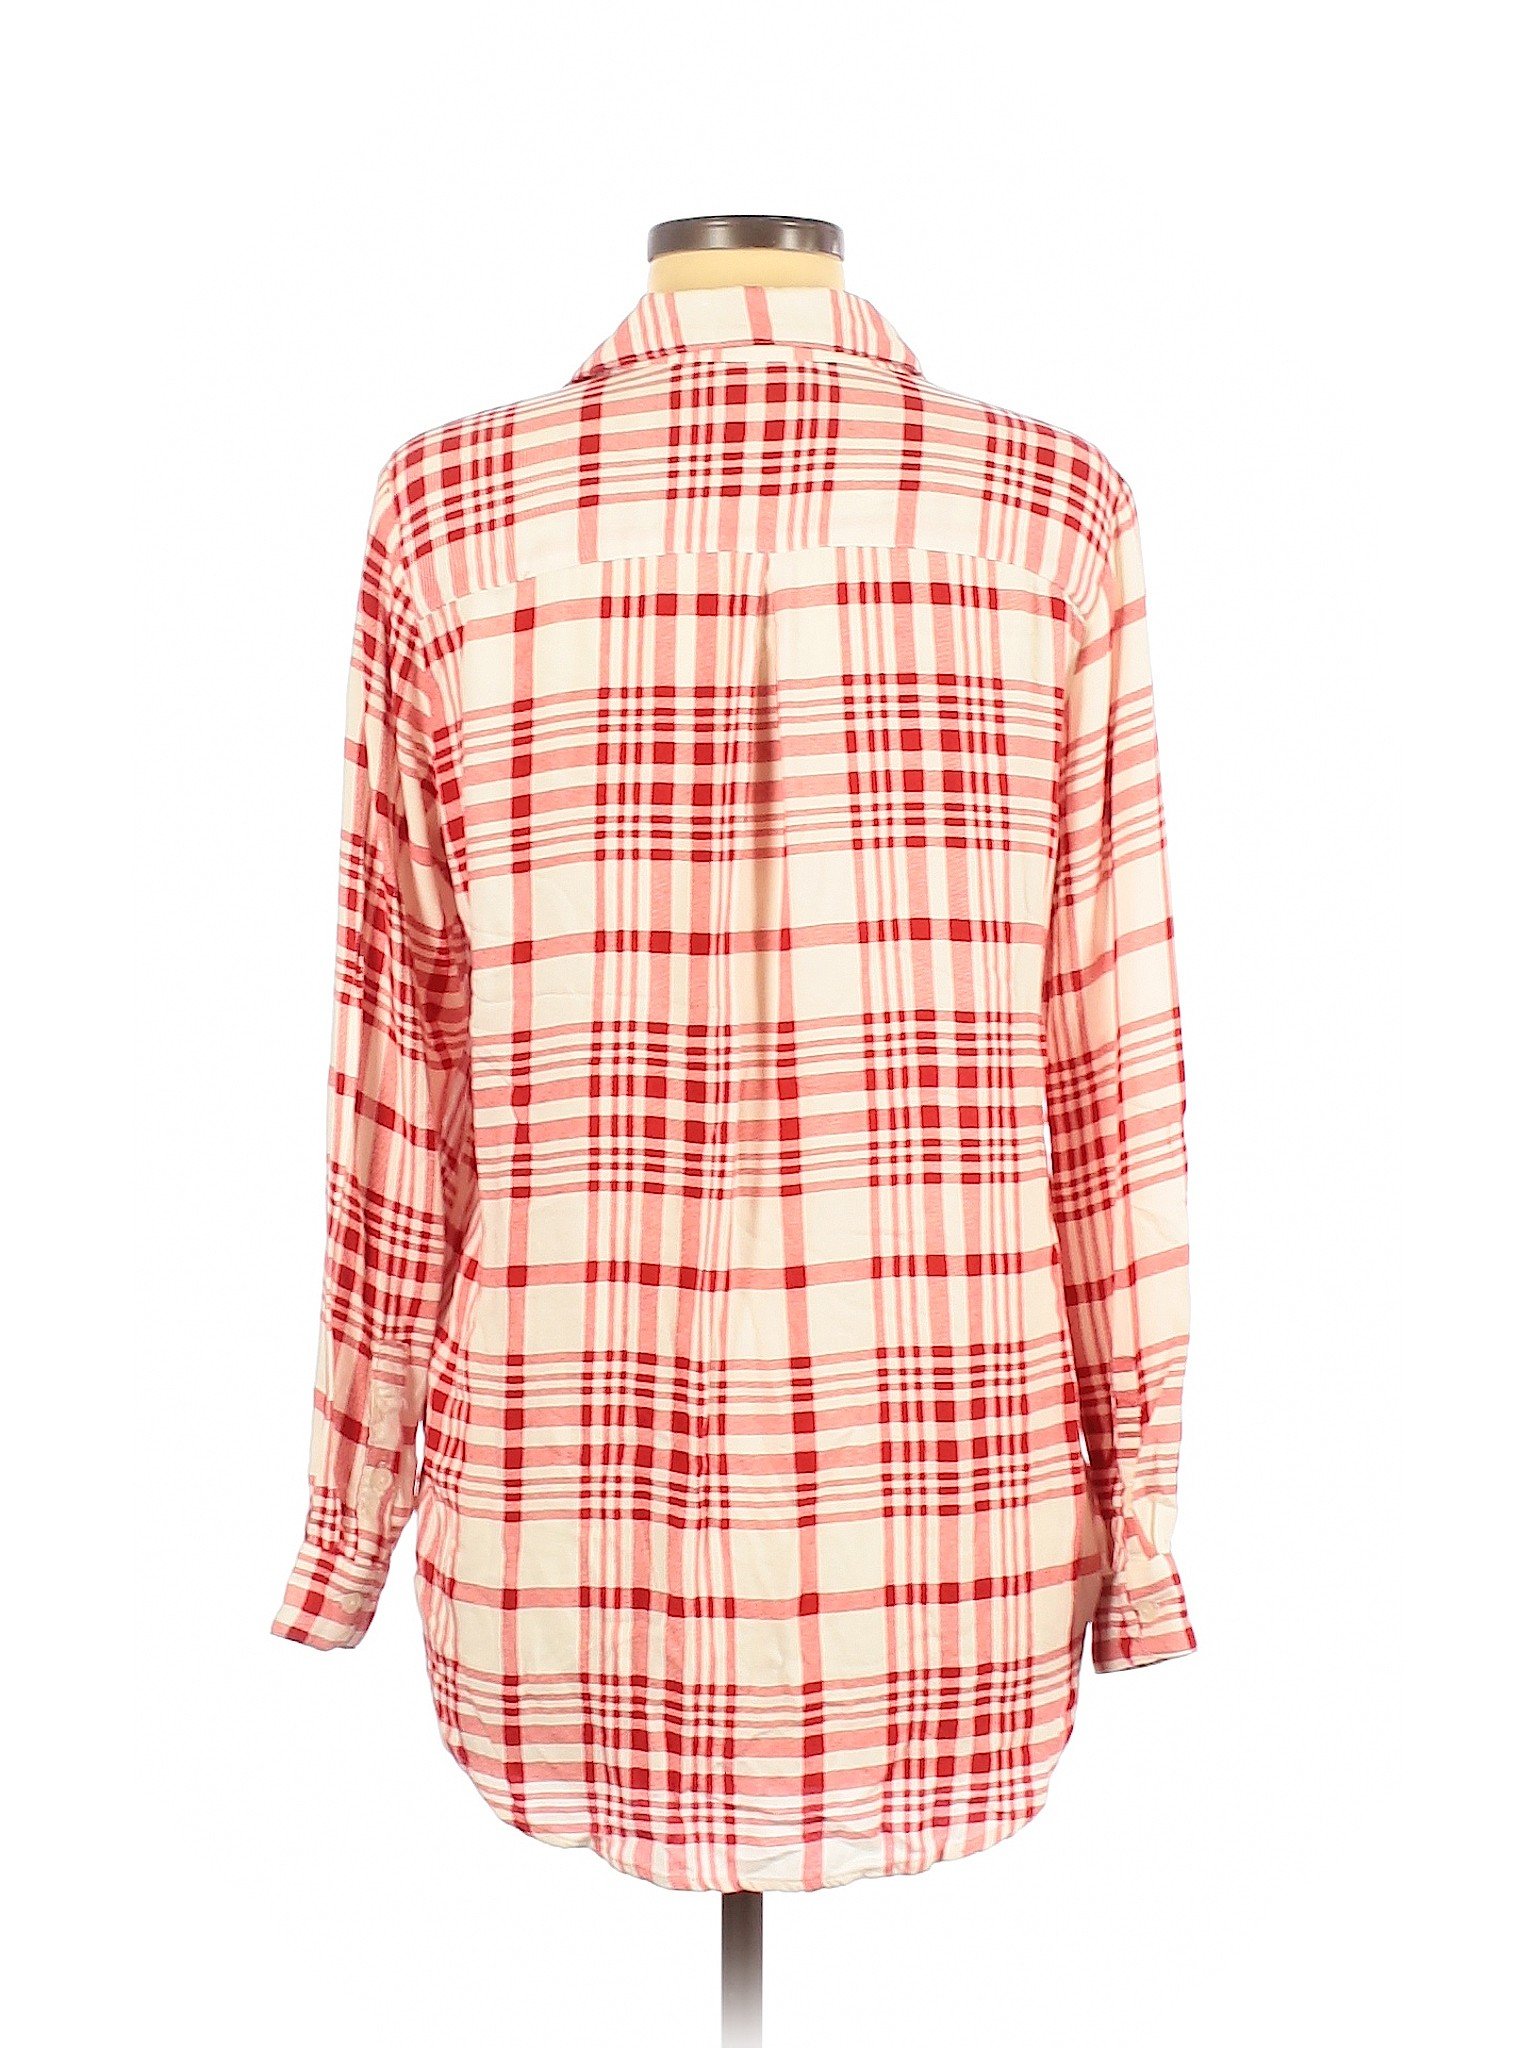 Velvet Heart Women Red Long Sleeve Button-Down Shirt M | eBay